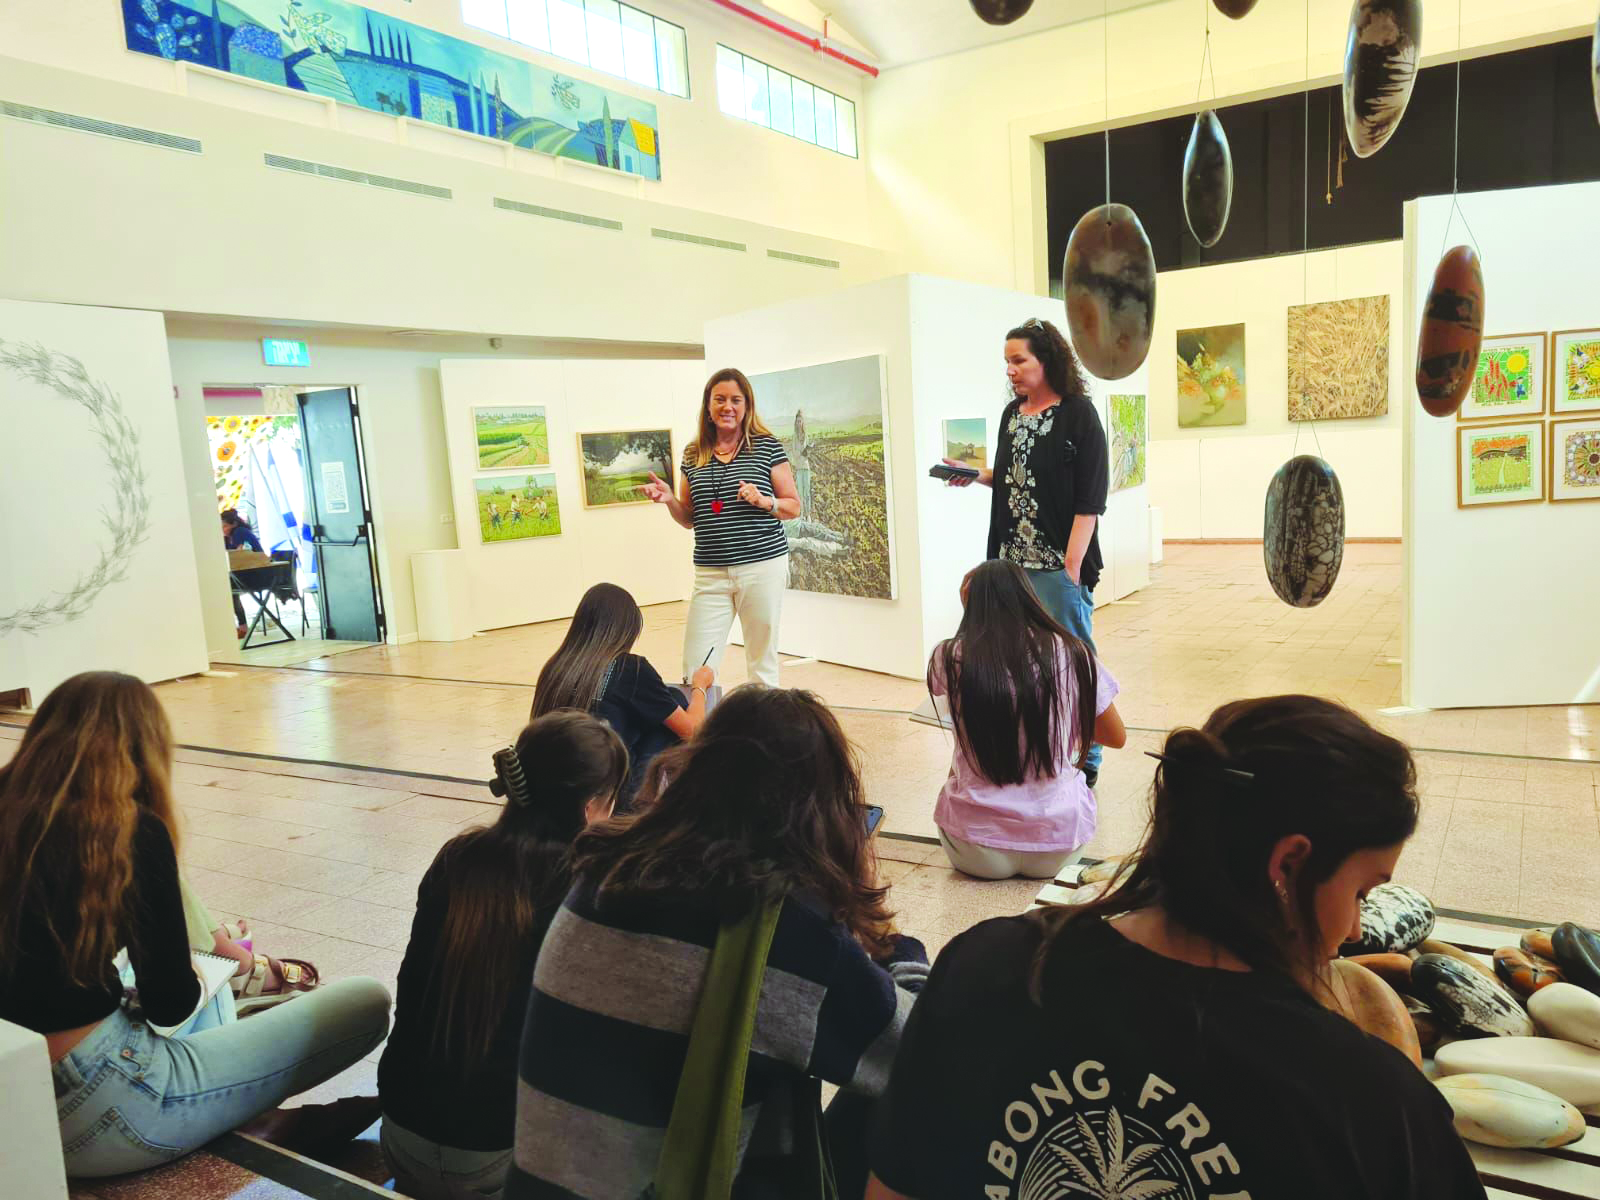 תלמידים מאזינים להרצאה על היצירות בתערוכה